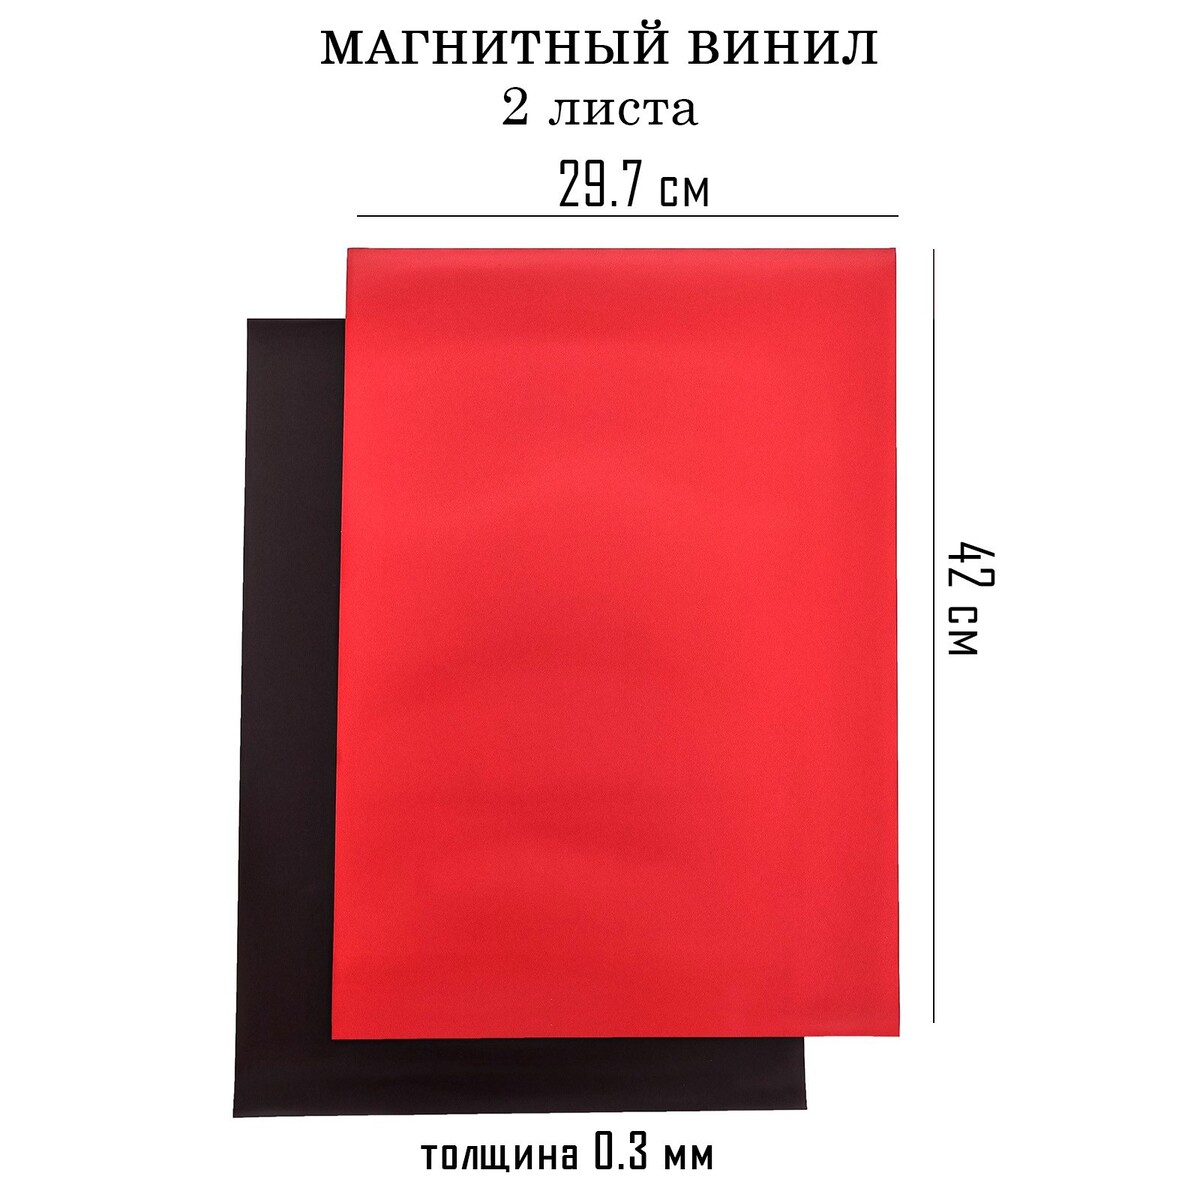 Магнитный винил, с пвх поверхностью, а3, 2 шт, толщина 0.3 мм, 42 х 29.7 см, красный аппликатор массажер медицинский тибетский магнитный на мягкой подложке 17х28 см красный